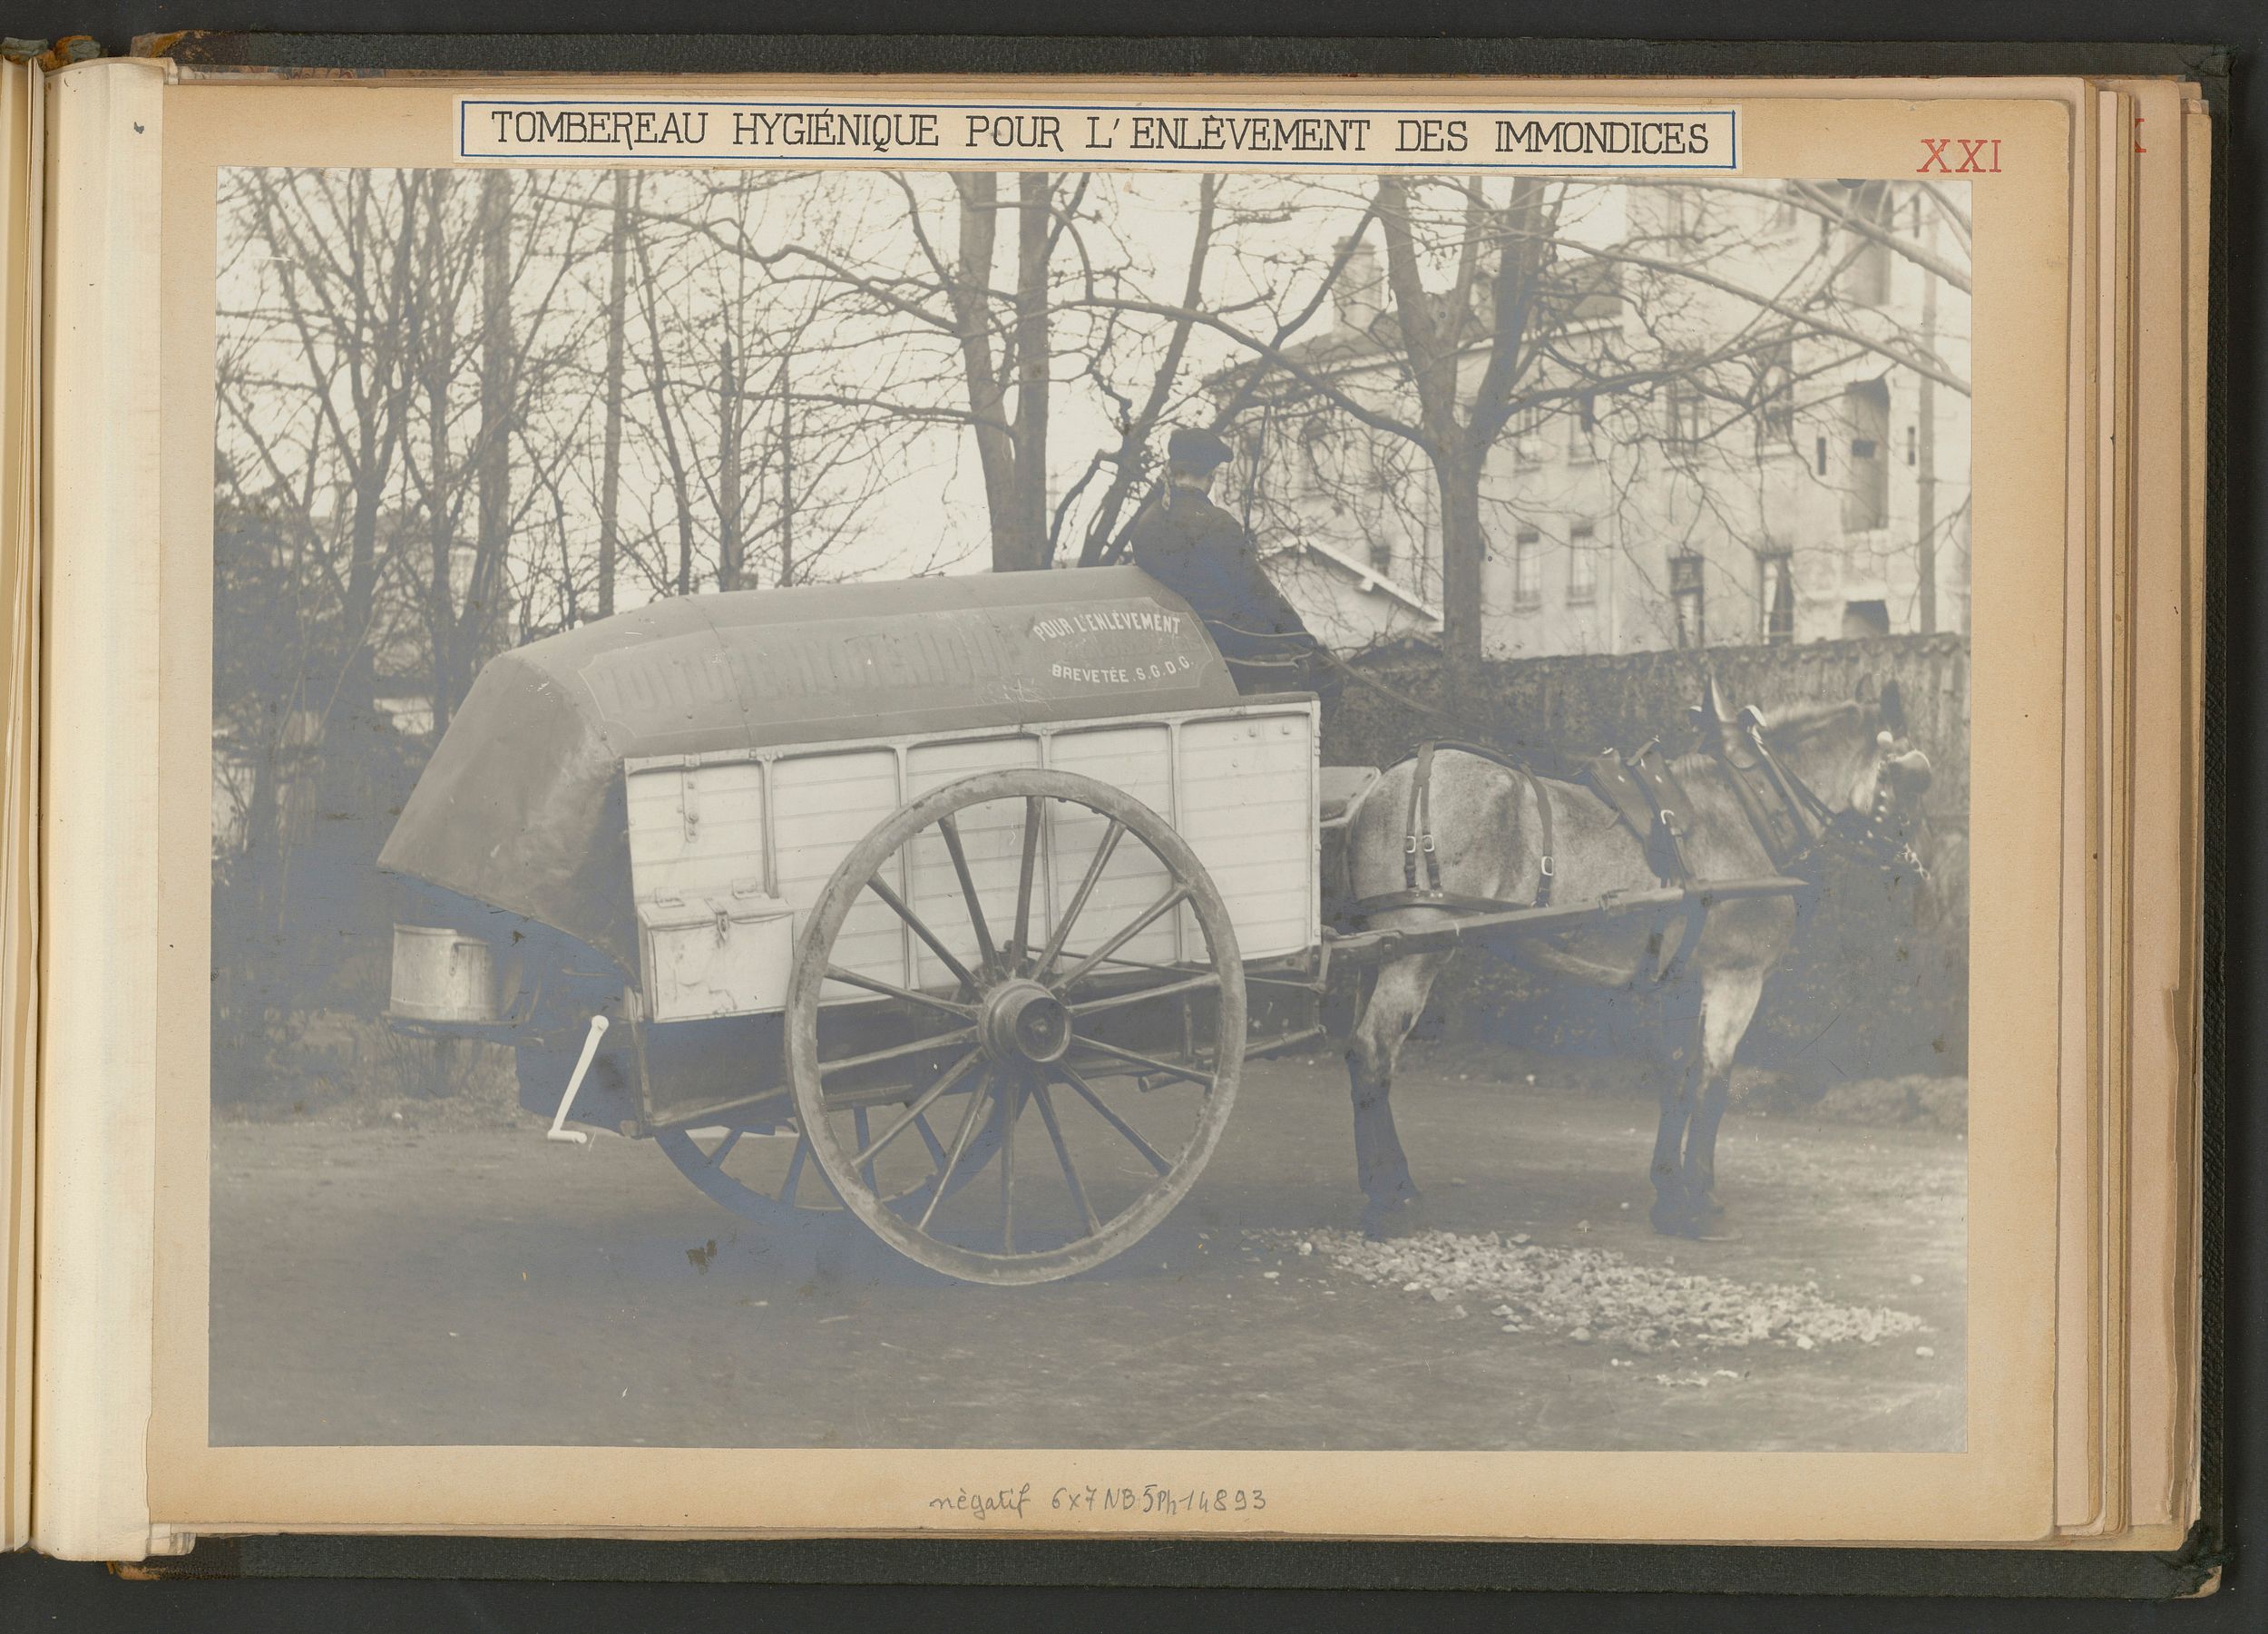 Tombereau hygiénique pour l'enlèvement des immondices : tirage photo. NB (1914-1915, cote 3SAT/24/24)